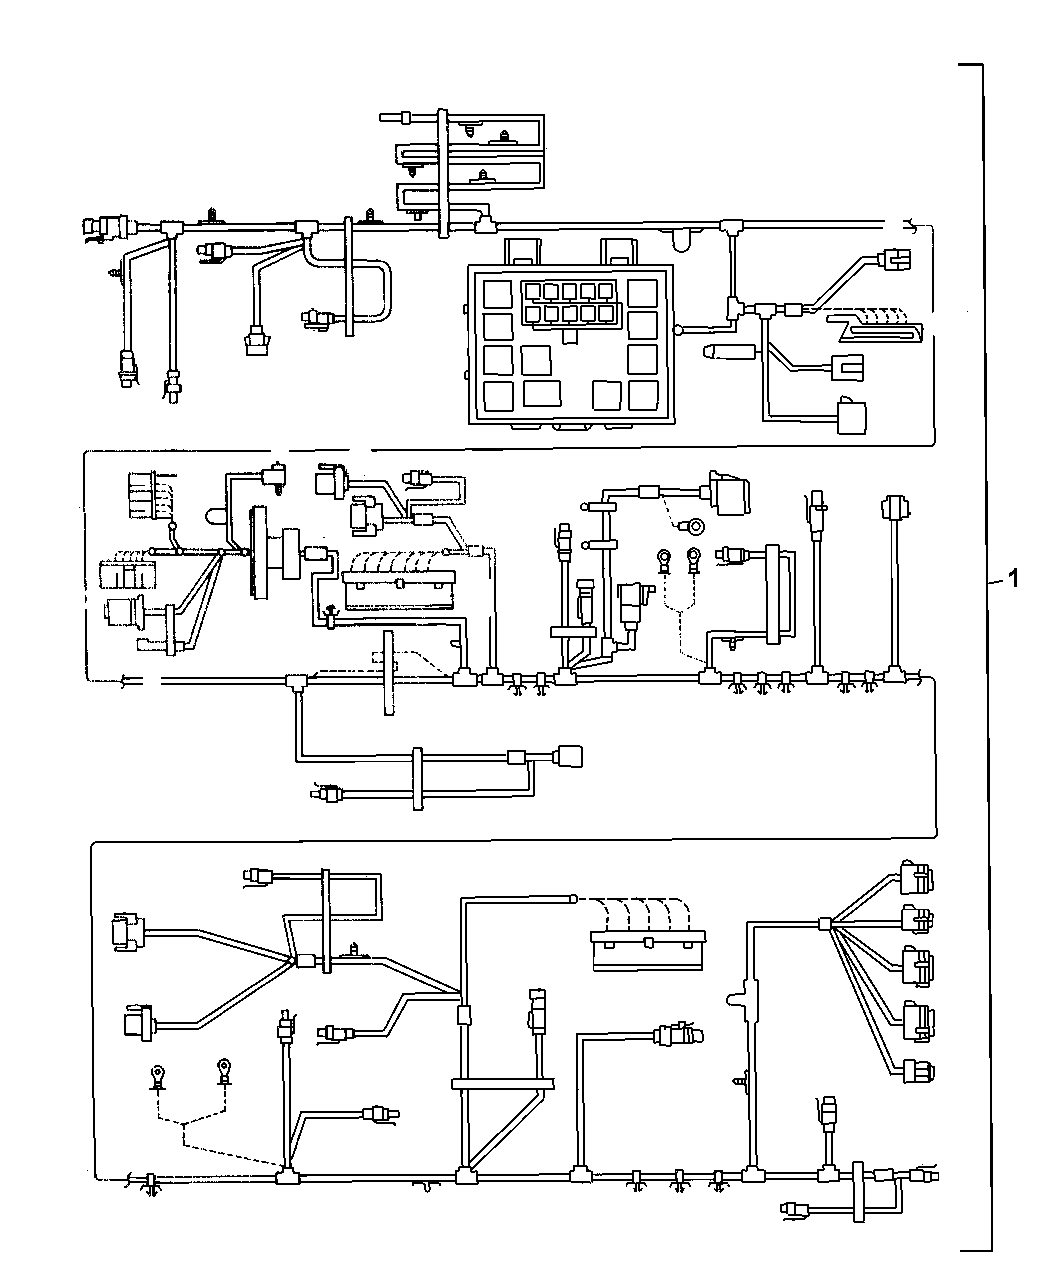 Wiring Diagram For 1999 Dodge Intrepid - Complete Wiring Schemas